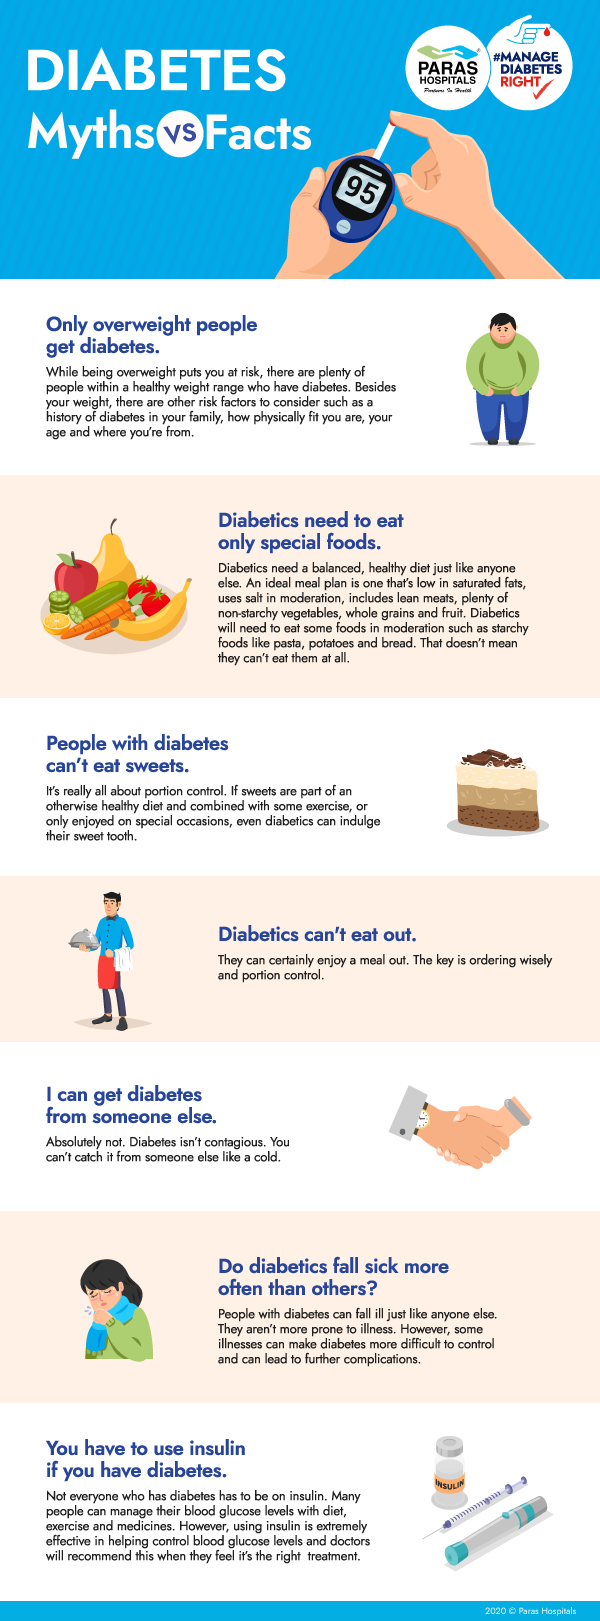 Diabetes Myths vs Facts